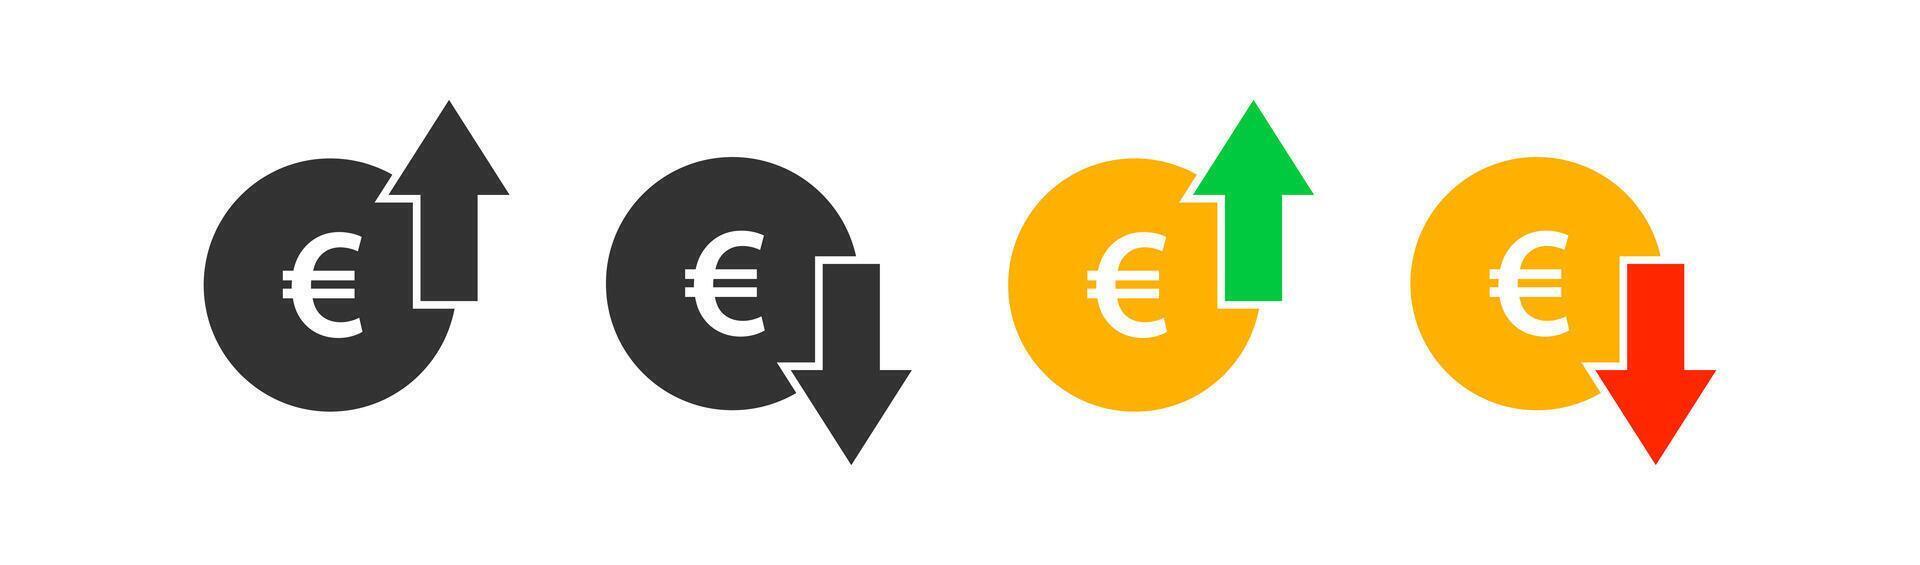 Euro Münze Graph oben und runter. Geld Kosten Pfeil Wachstum, Abfall. Währung Investition. Markt Preis. Finanzen Austausch. Vektor Illustration.